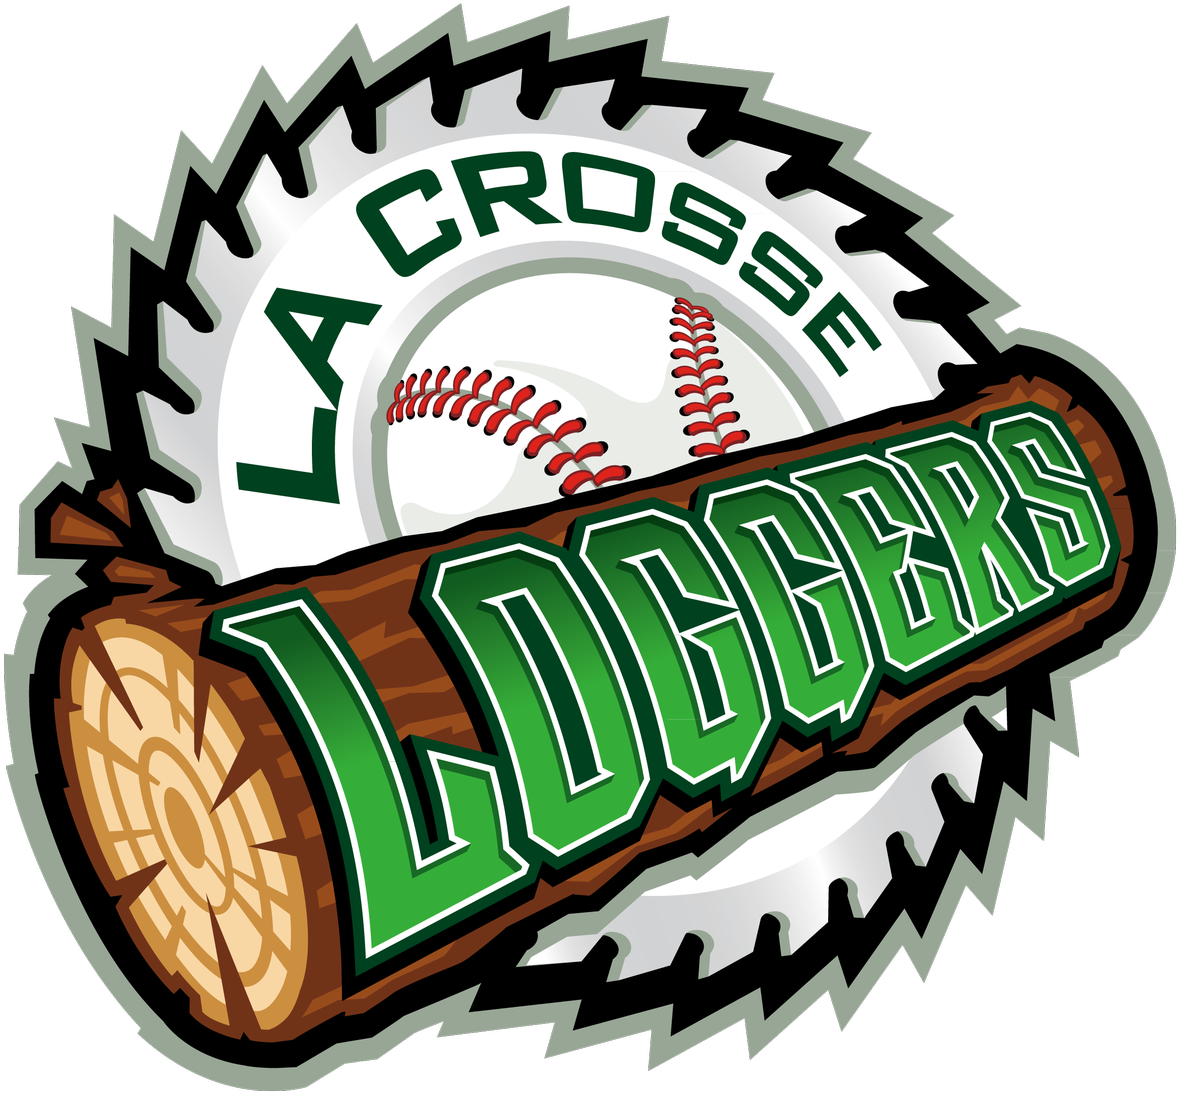 La Crosse Loggers Launch Latest Logos, Louie - La Crosse Loggers Logo (1200x1118)